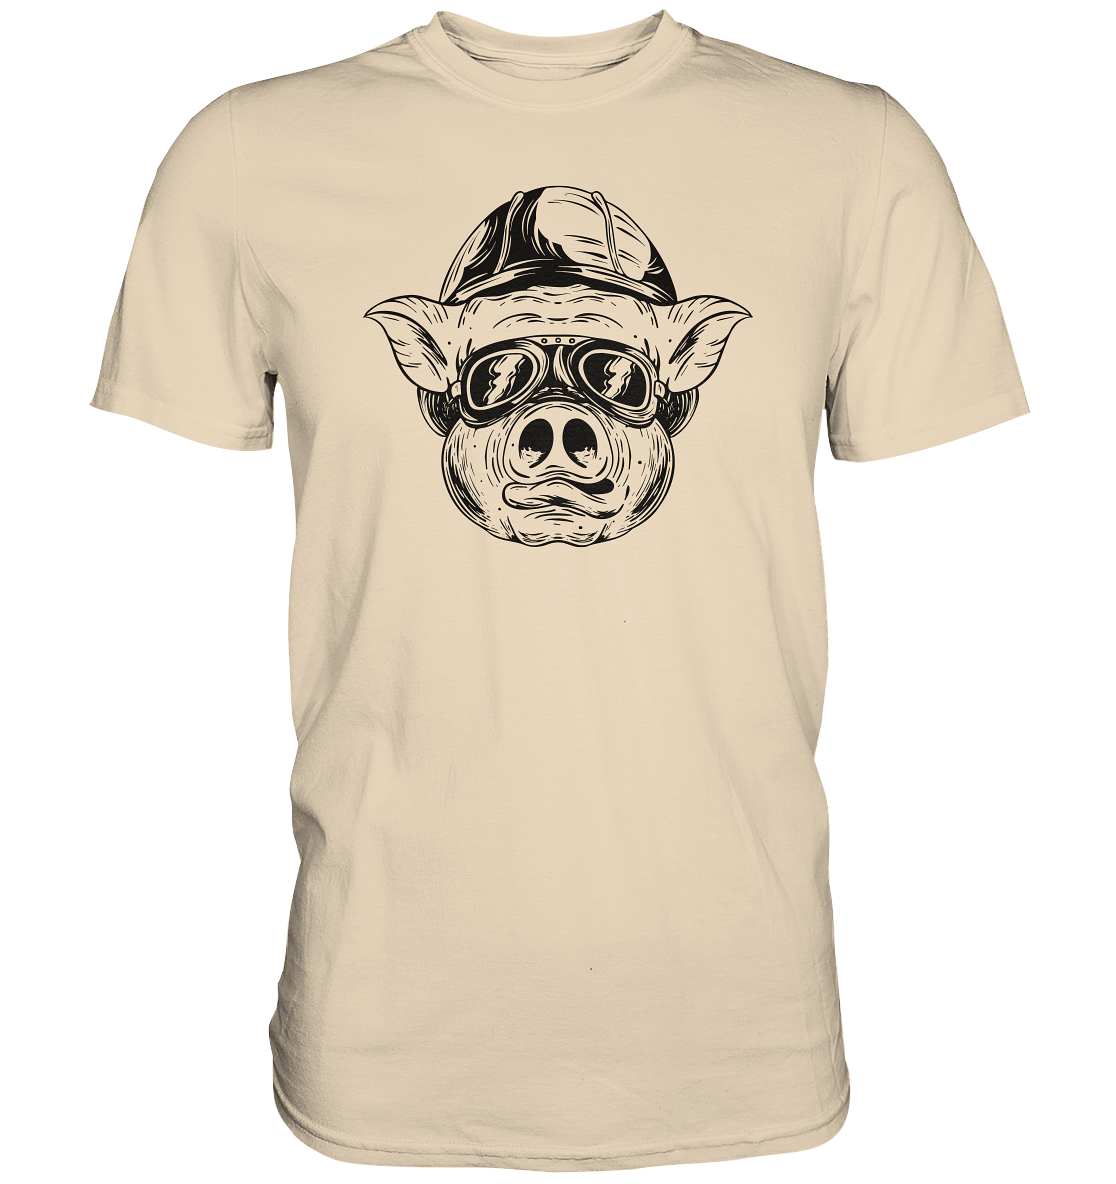 Schweinskopf al dente - Premium unisex Shirt